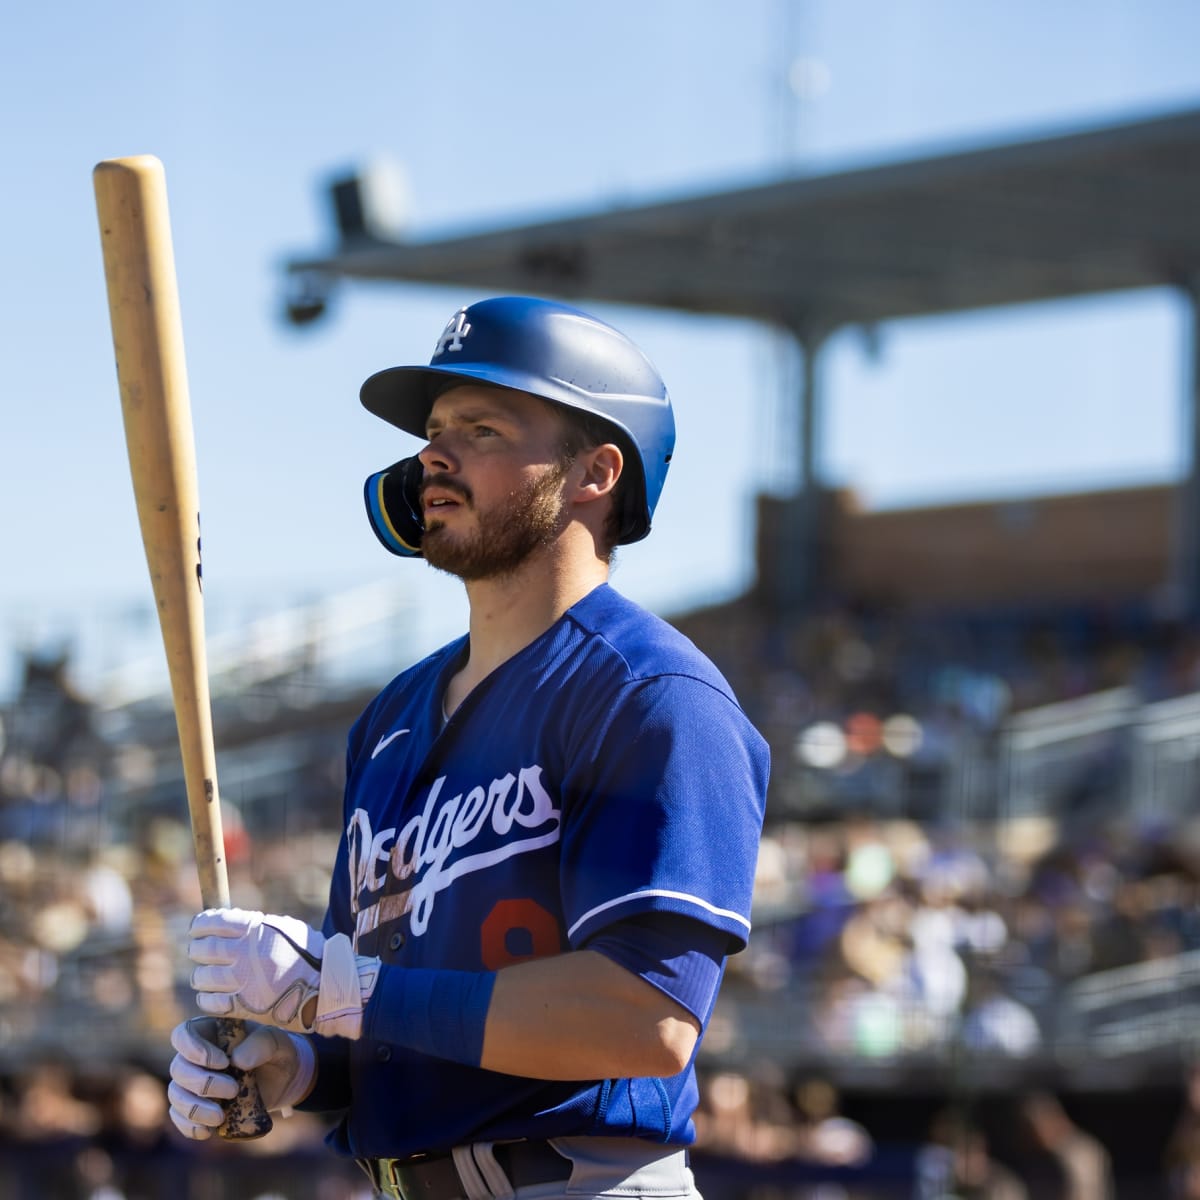 Gavin Lux on Dodgers fans' presence in Houston: 'It felt like we